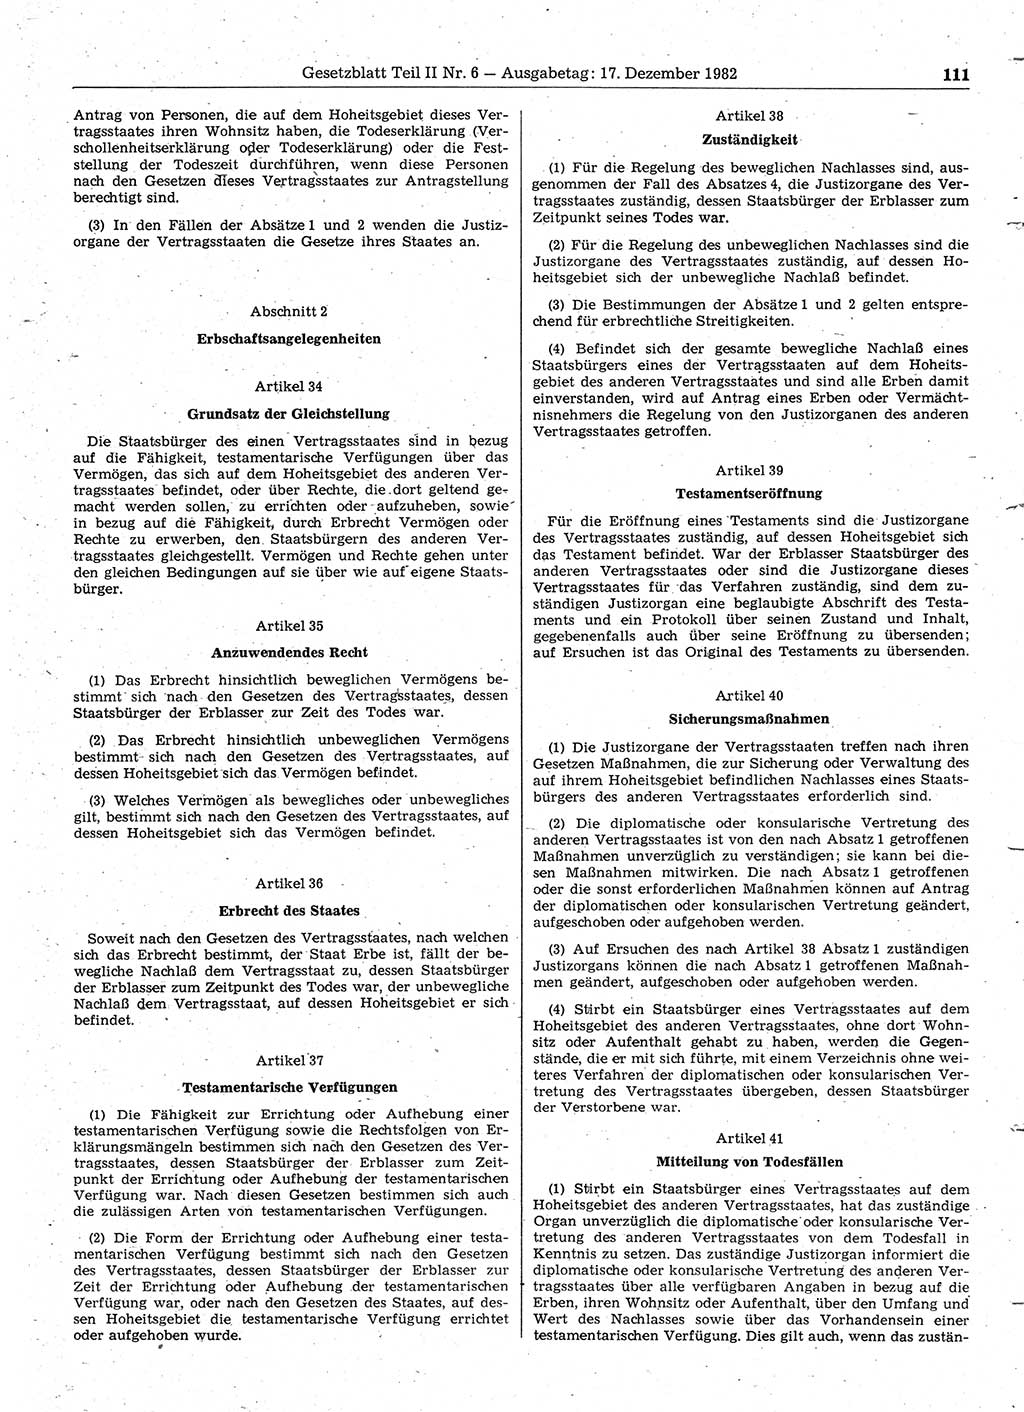 Gesetzblatt (GBl.) der Deutschen Demokratischen Republik (DDR) Teil ⅠⅠ 1982, Seite 111 (GBl. DDR ⅠⅠ 1982, S. 111)